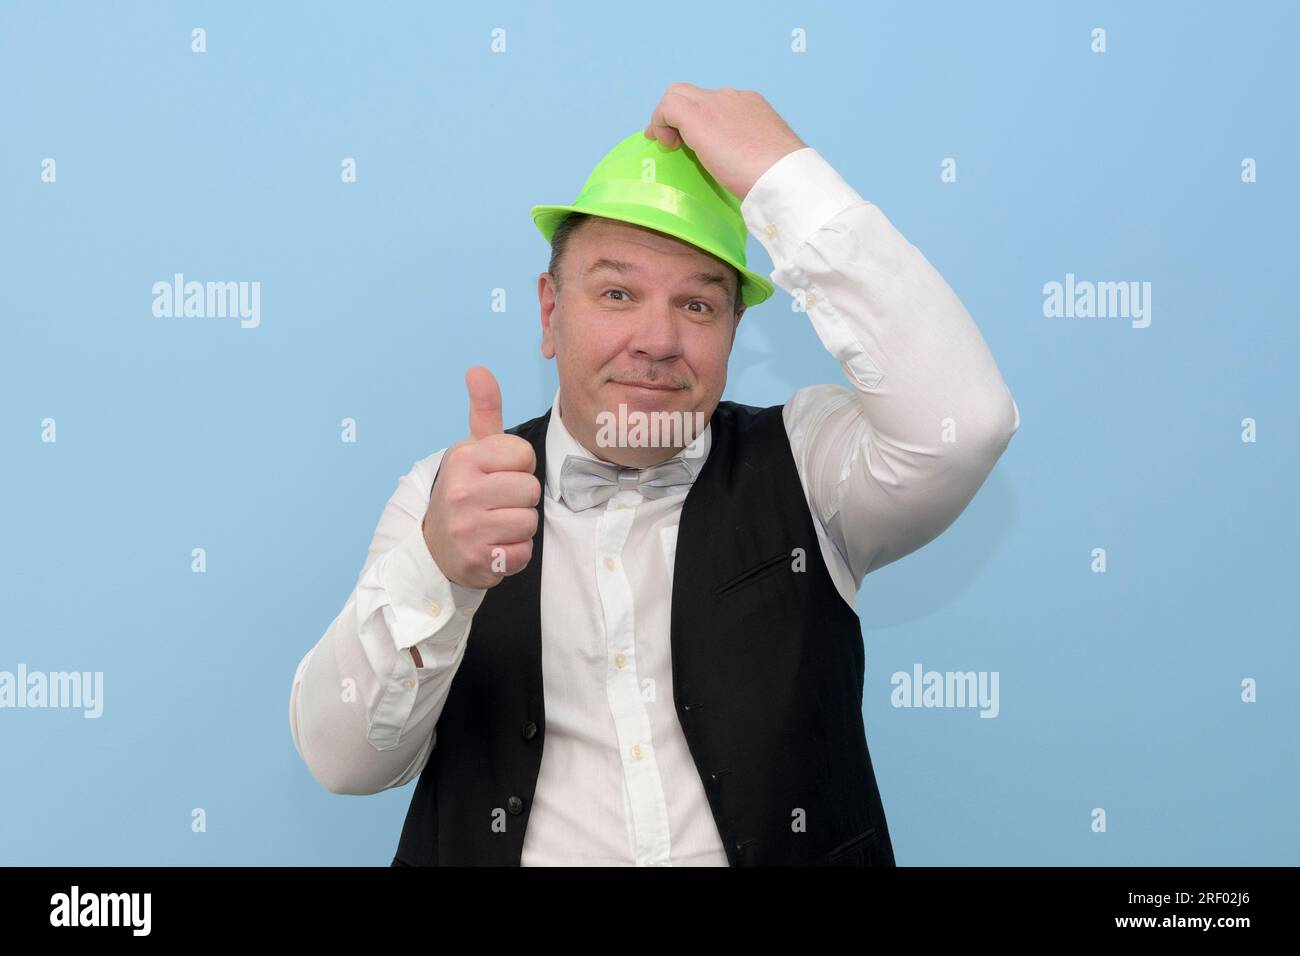 Bella festa. Un uomo di mezza età con un cappello verde di carnevale ti invita a una festa. sfondo azzurro. Foto Stock